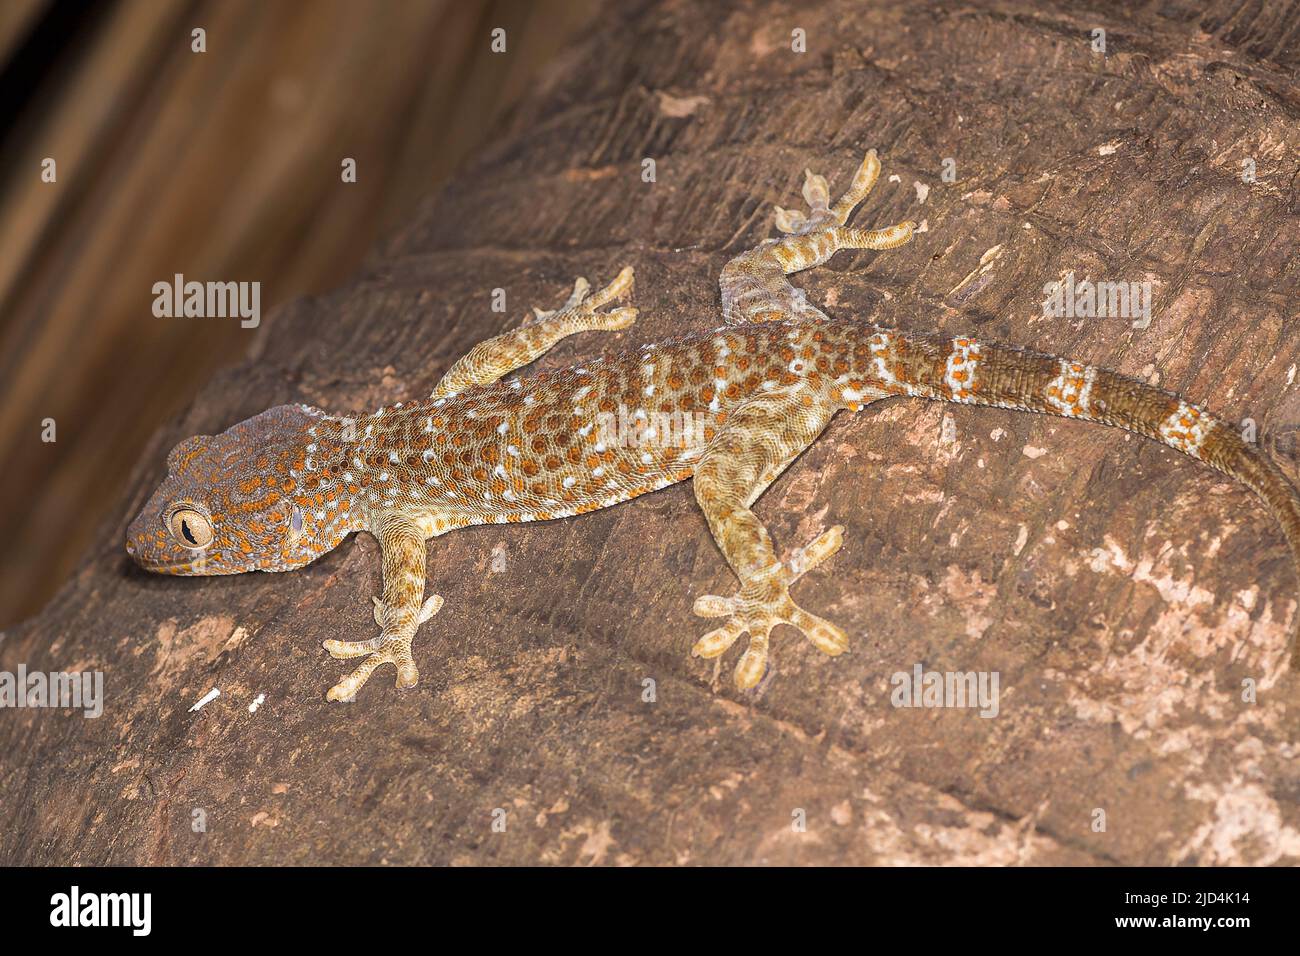 Tokay gecko (Gekko gecko) from Komodo Island, Indonesia. Stock Photo